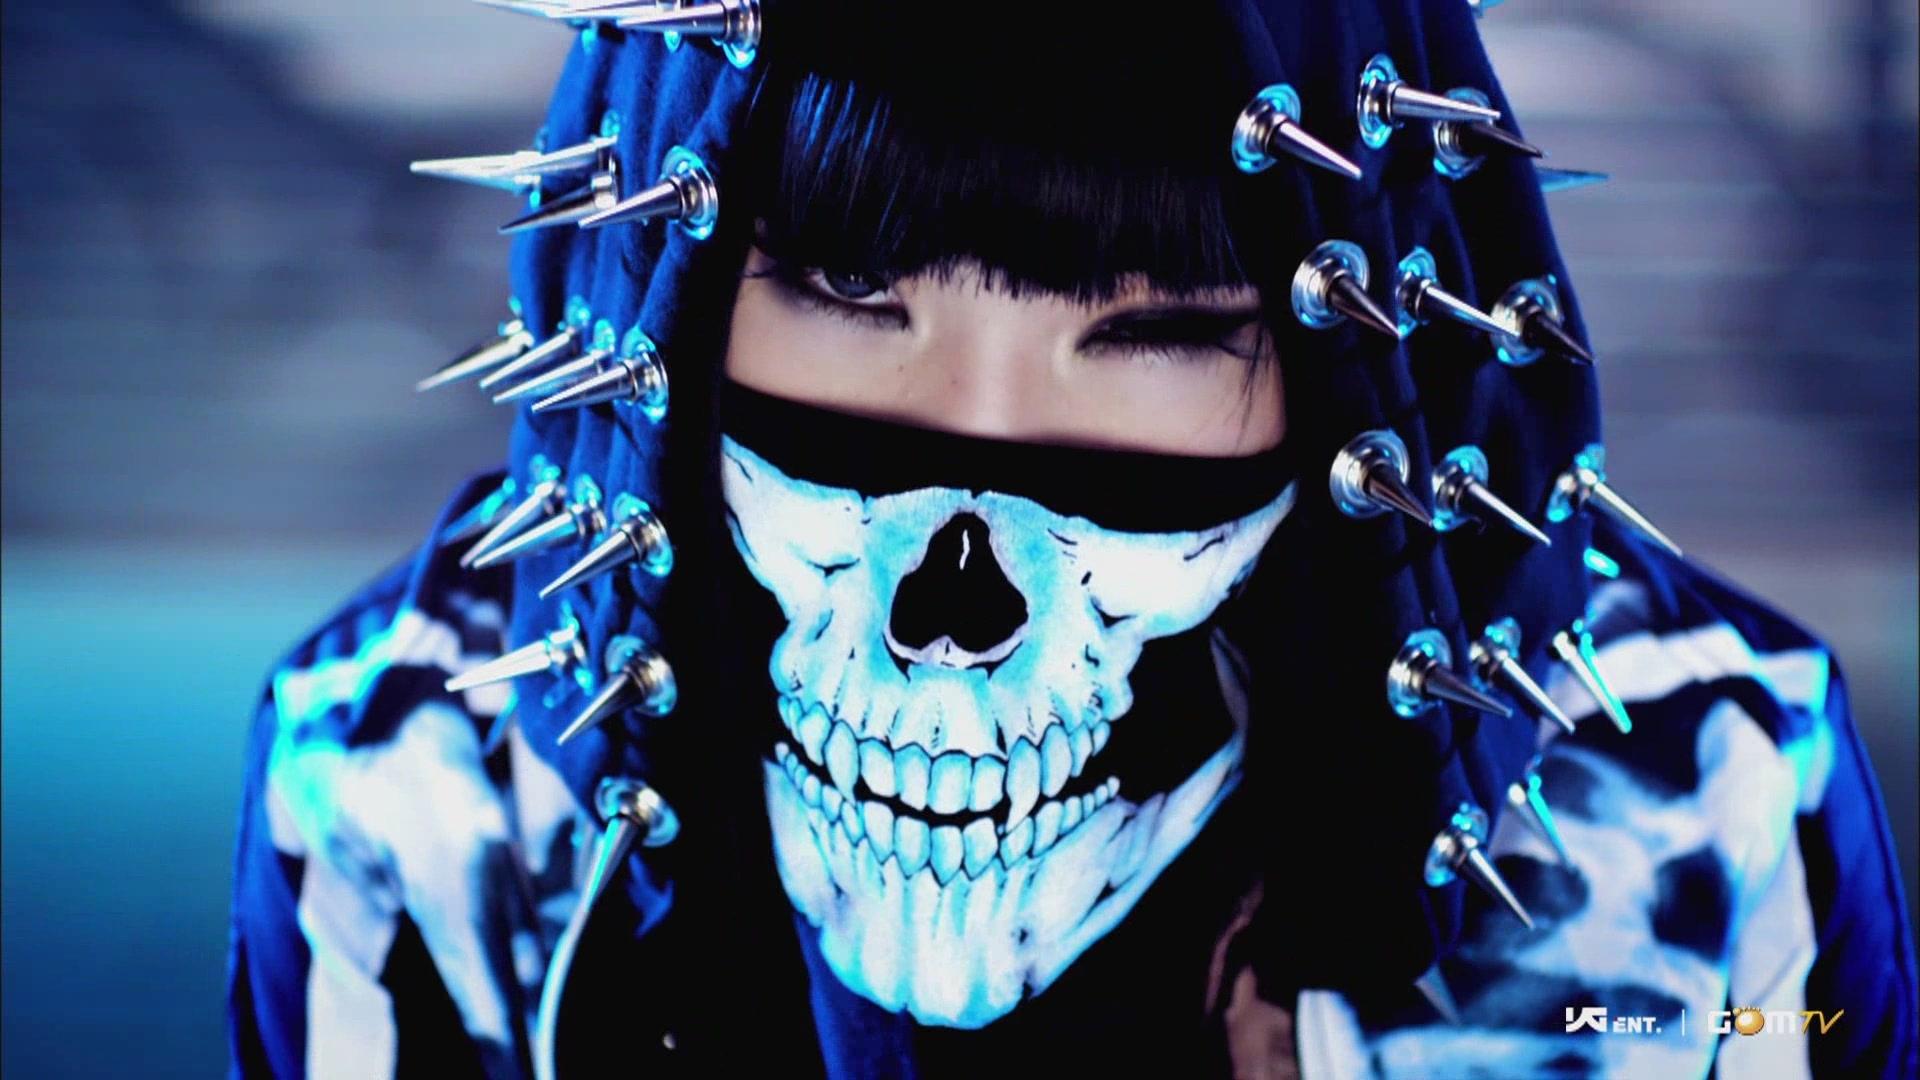 2ne1 minzy kpop mask skull spikes chrome hood hat fangs people asian